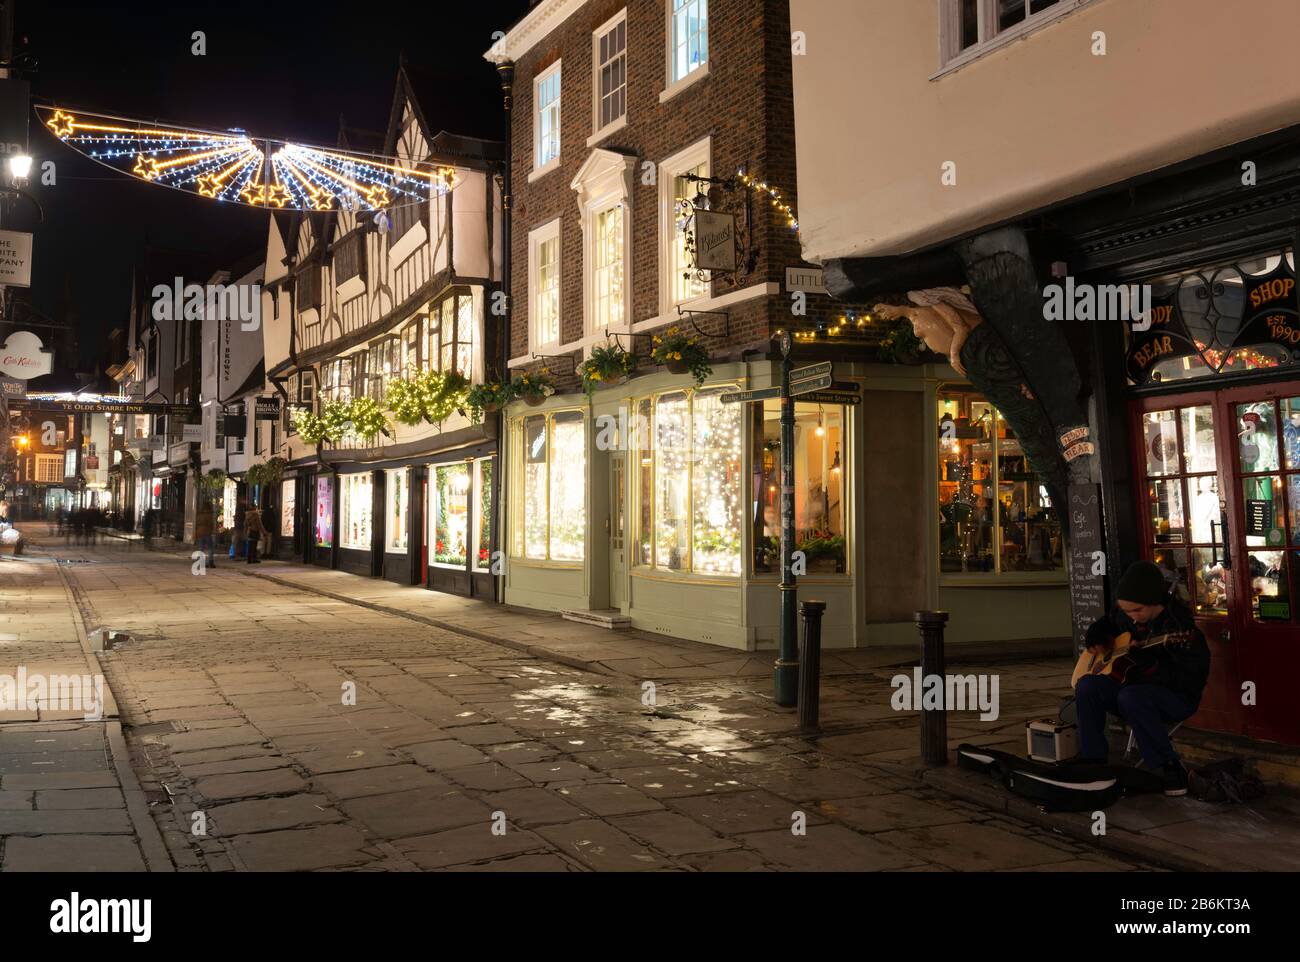 StoneGate, York zu Weihnachten: Eine der Haupteinkaufsstraßen Yorks nachts während der Festtage Stockfoto